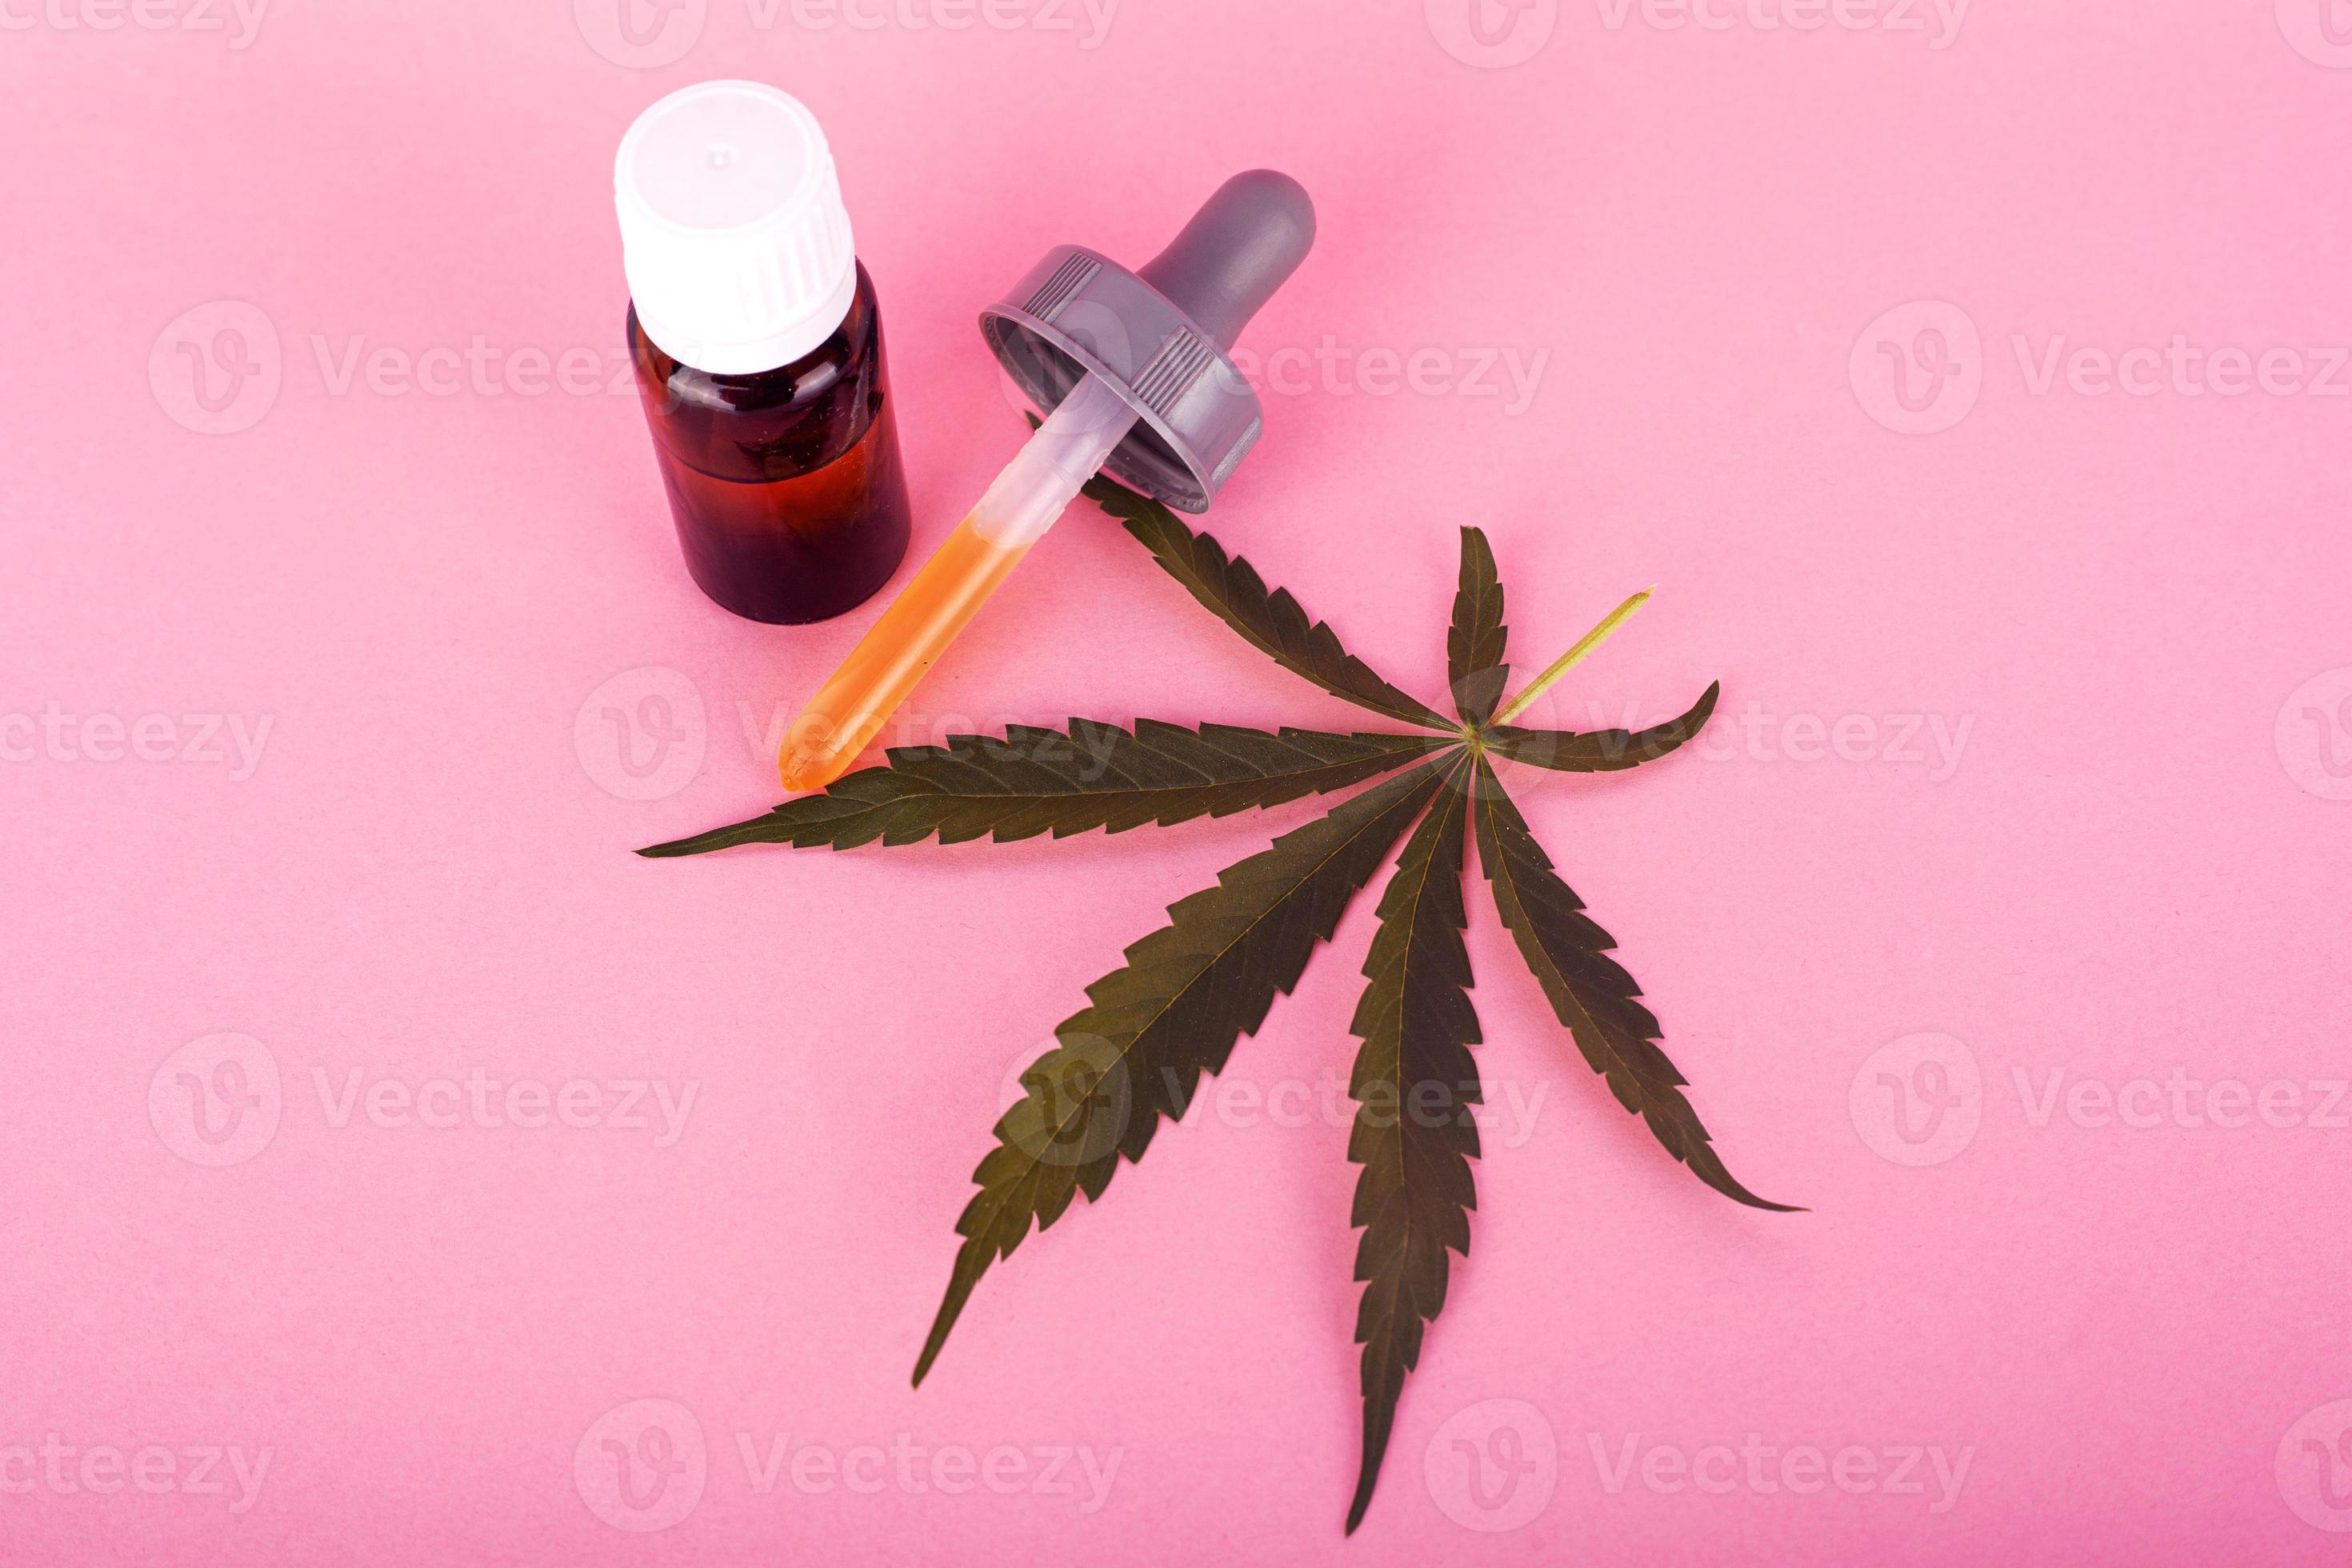 hennepolie voor medisch gebruik, flessen met medicinaal cannabisextract op roze achtergrond foto